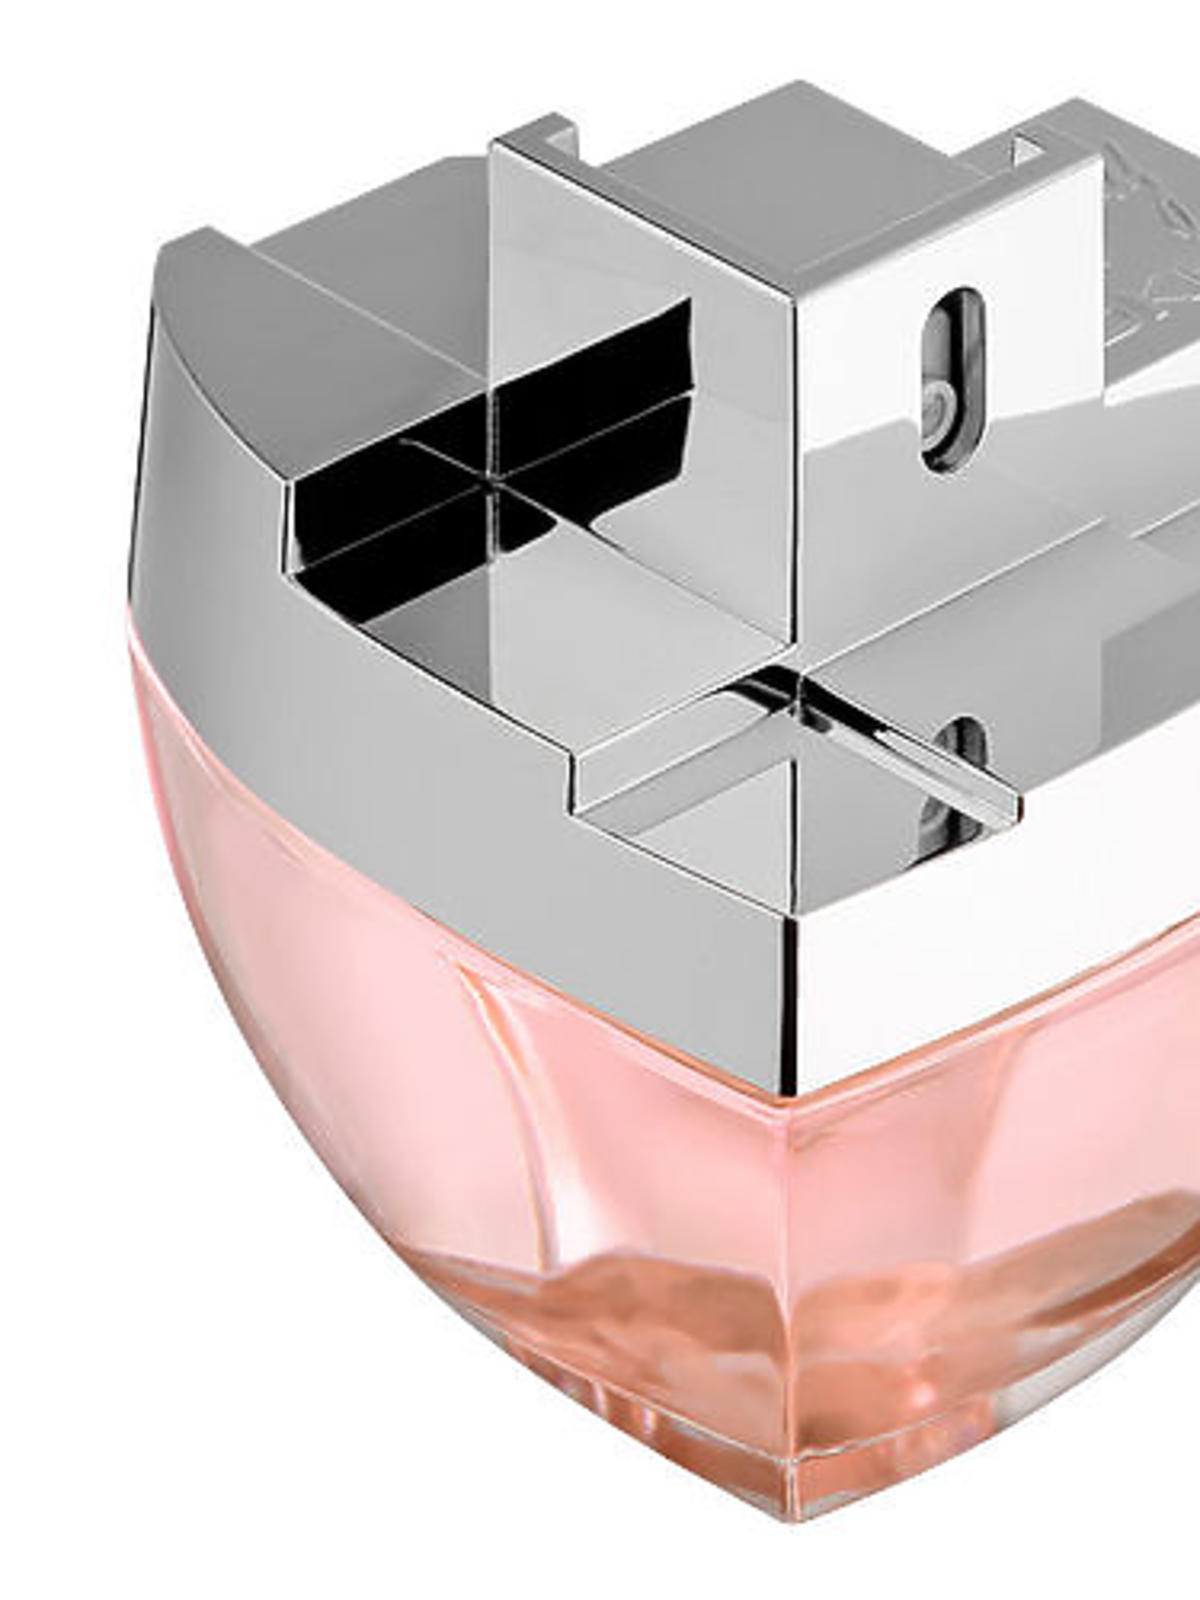 Wyprzedaże Sephora 2016 zima, perfumy DKNY MYNY Woda Perfumowana 30 ml, cena: 99 zł (ze 189 zł)